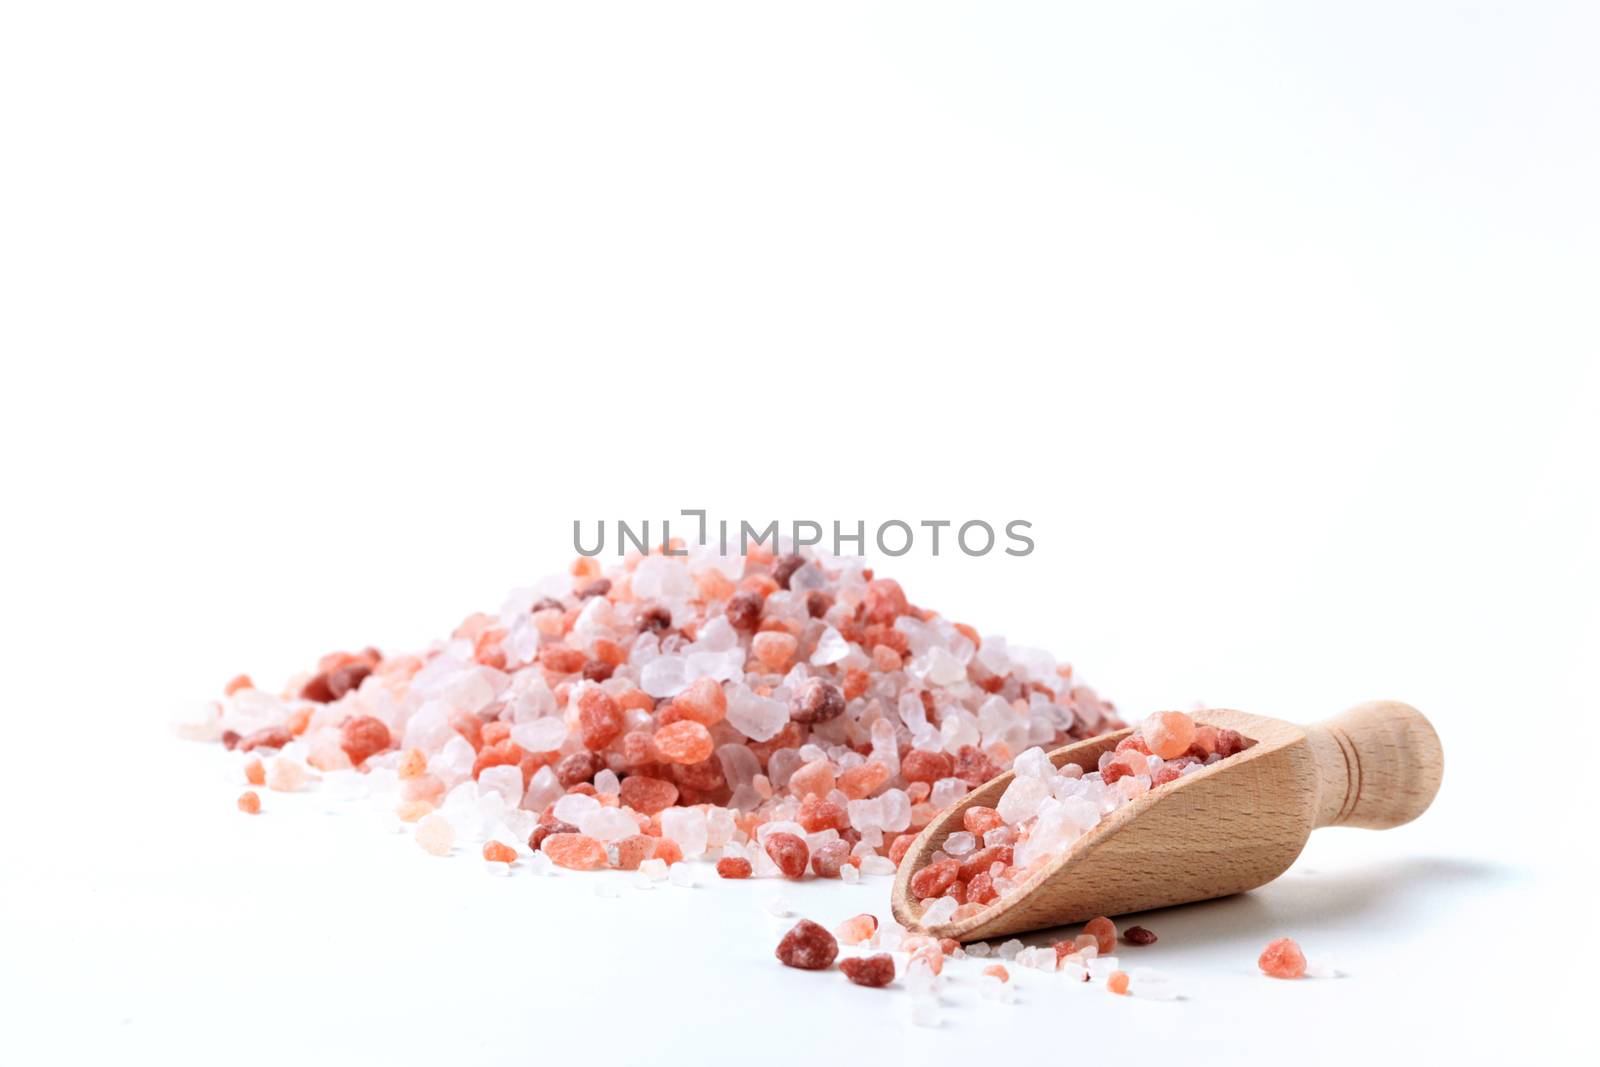 Himlaya Salt Pile On White by orcearo